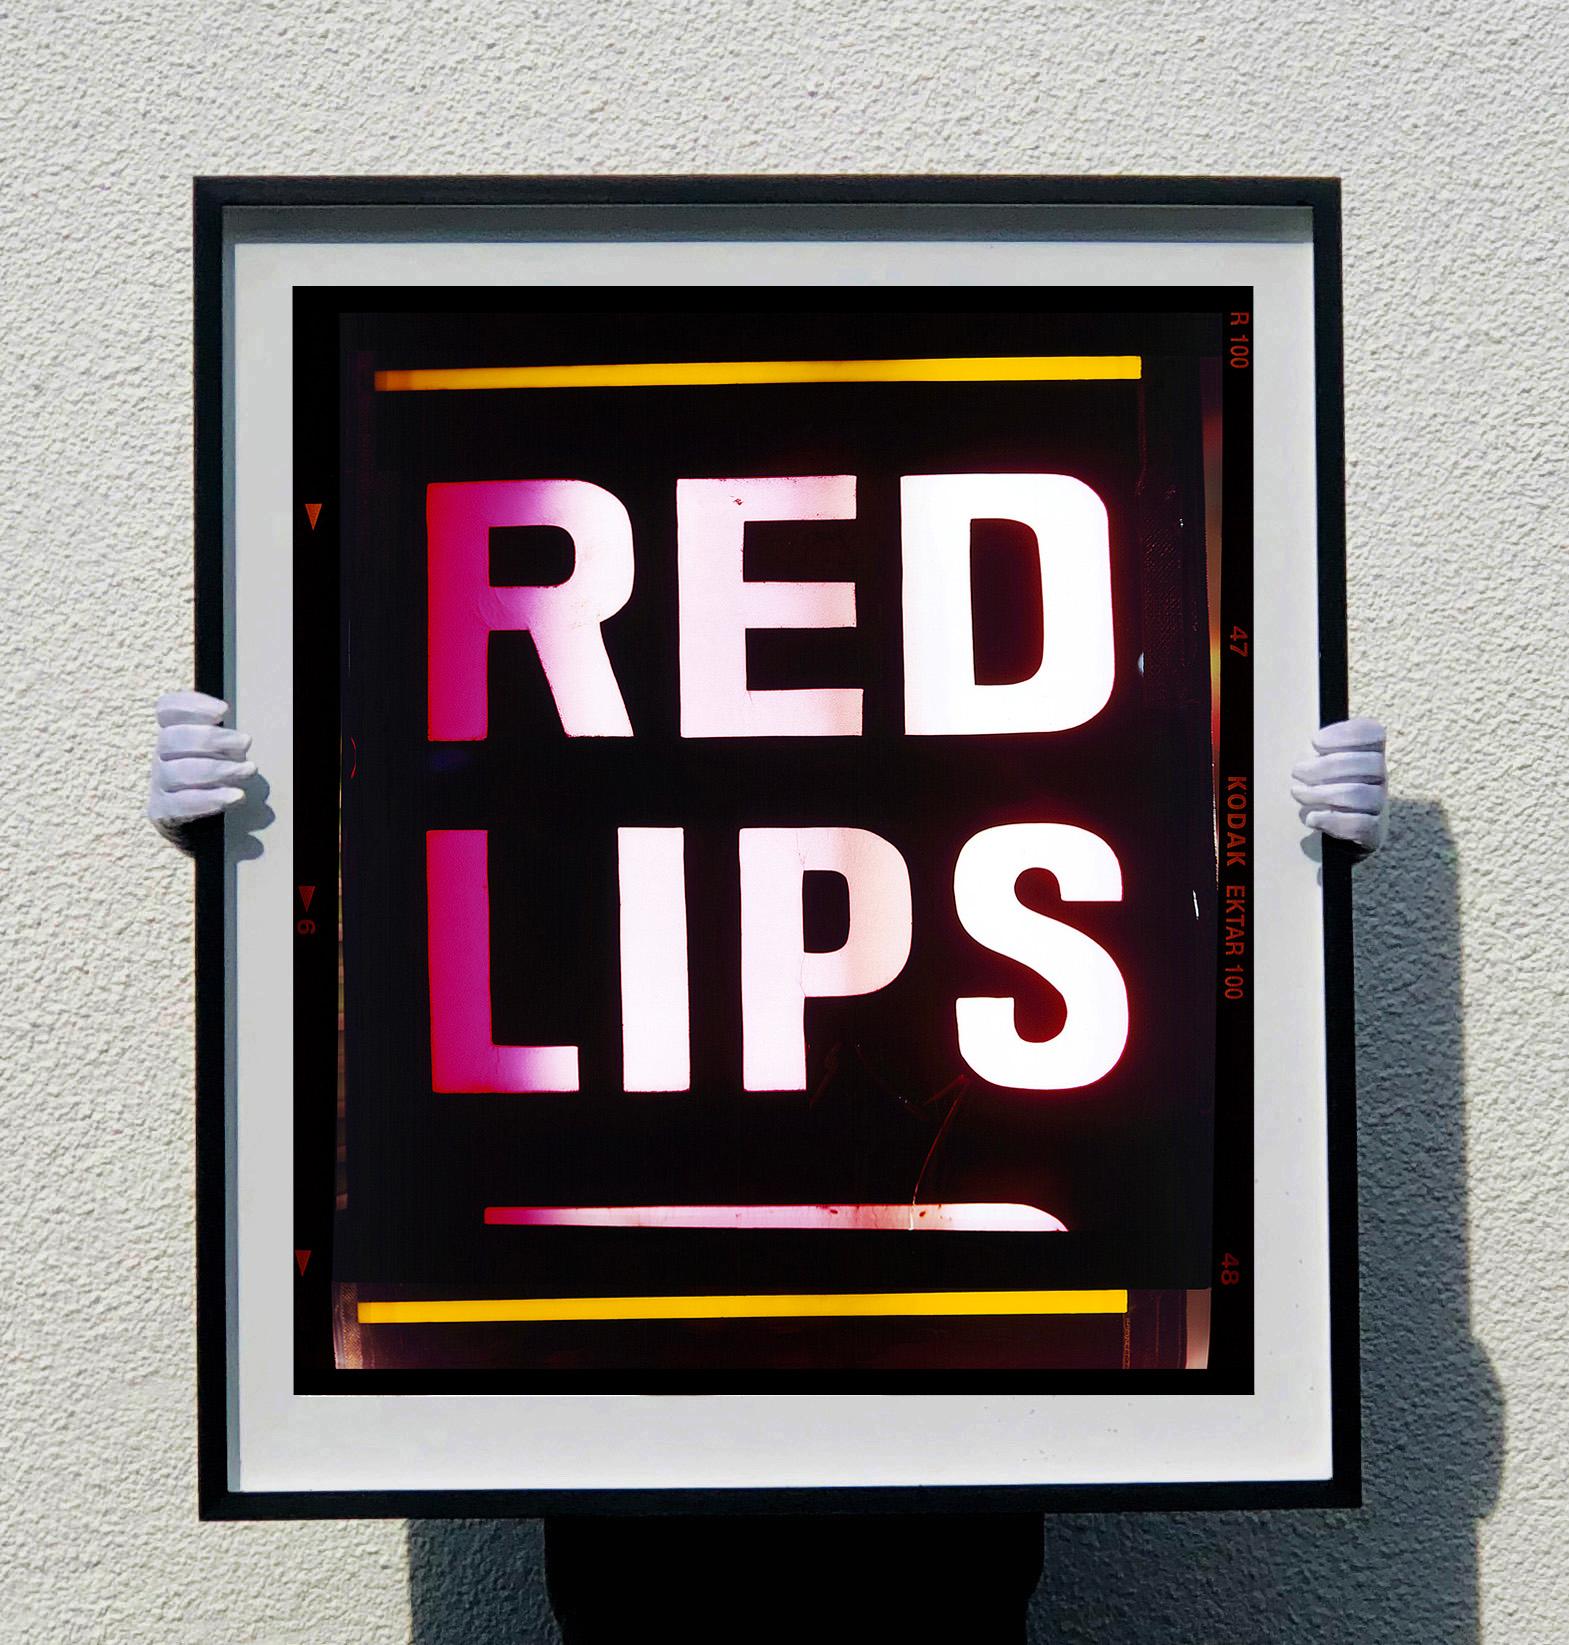 Red Lips, Teil von Richards Hongkong-Serie von 2016, fängt die Essenz von Kowloon ein. Die kühne Typografie sorgt für coole, originelle Pop-Art.

Dieses Kunstwerk ist eine auf 25 Exemplare limitierte Auflage eines fotografischen Glanzdrucks.